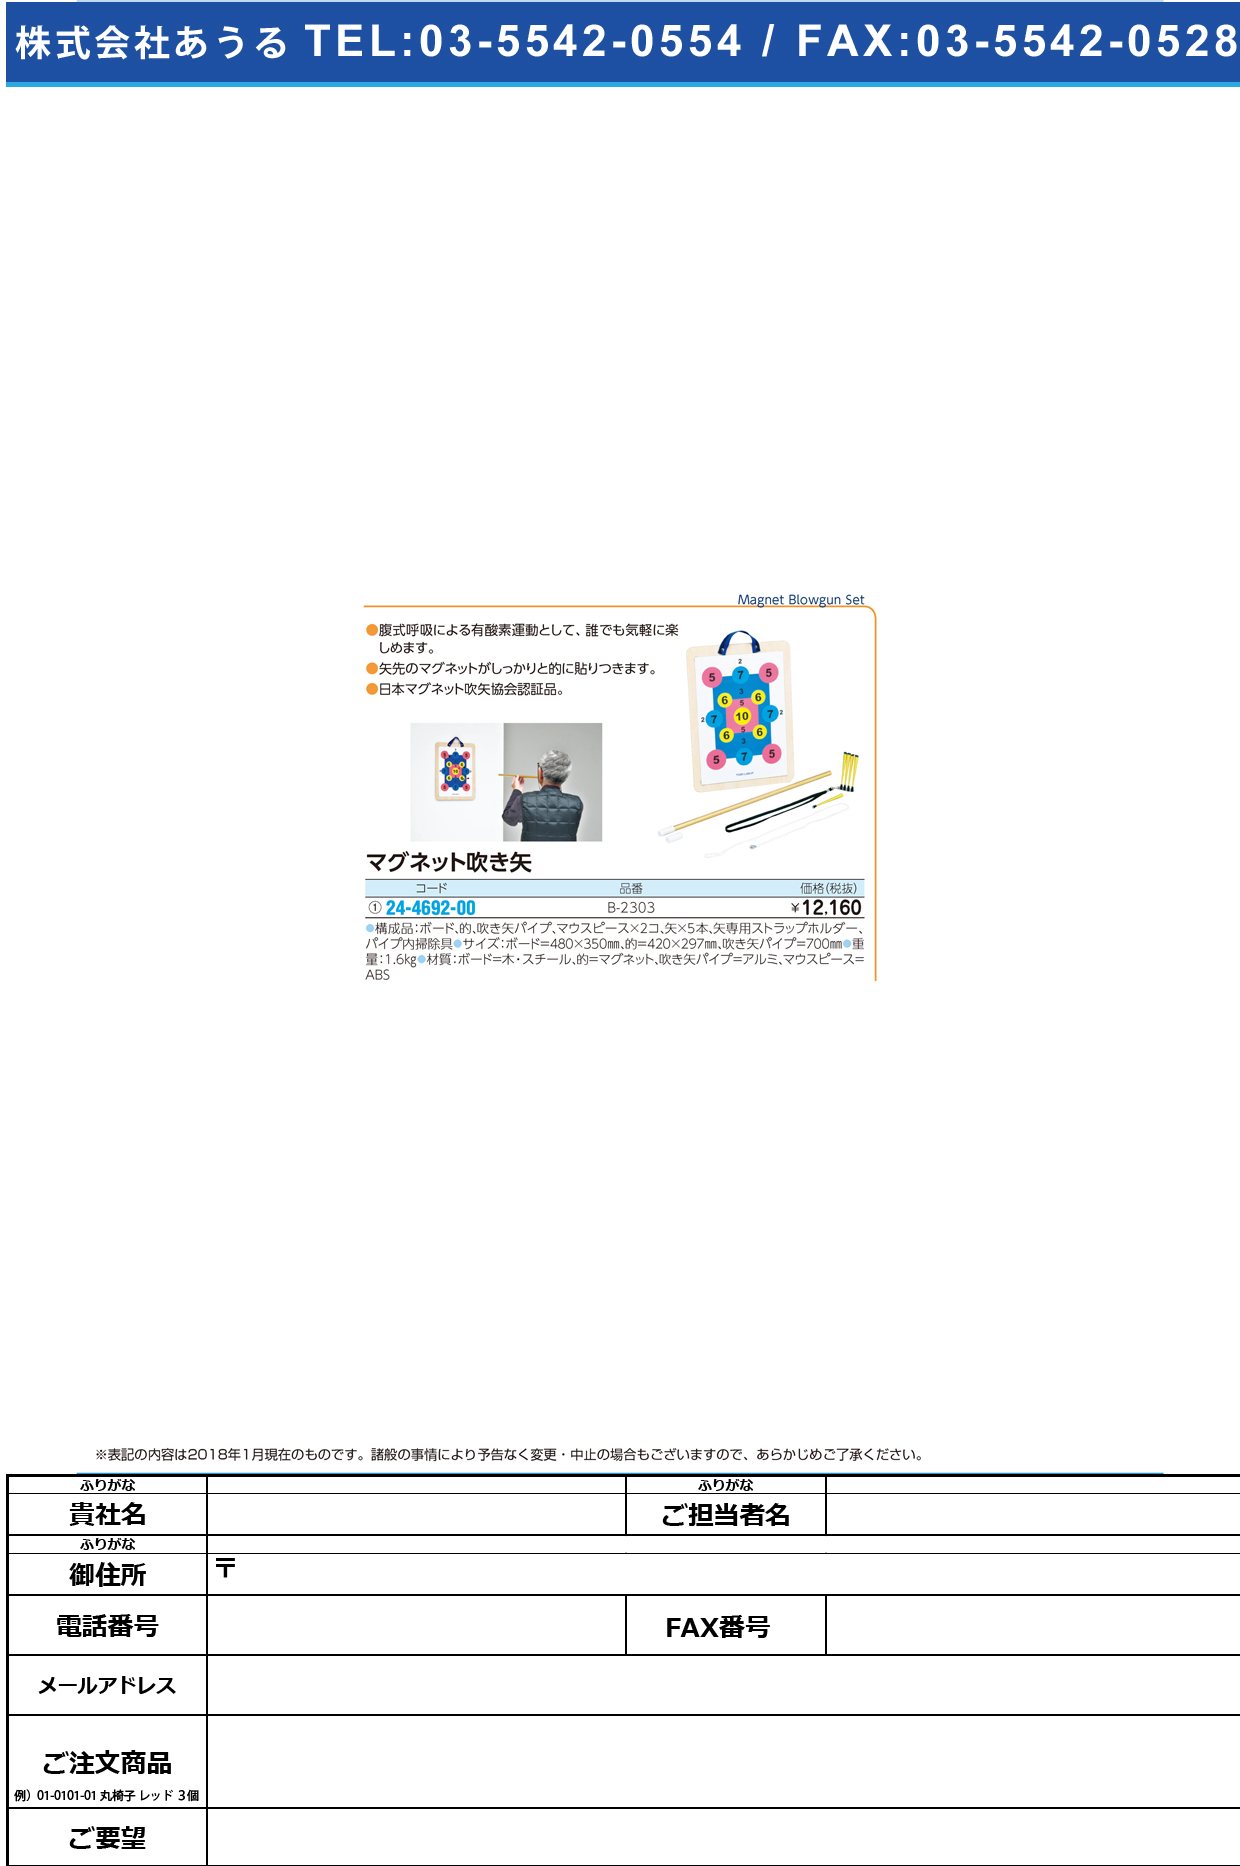 (24-4692-00)マグネット吹き矢 B-2303 ﾏｸﾞﾈｯﾄﾌｷﾔ【1組単位】【2019年カタログ商品】